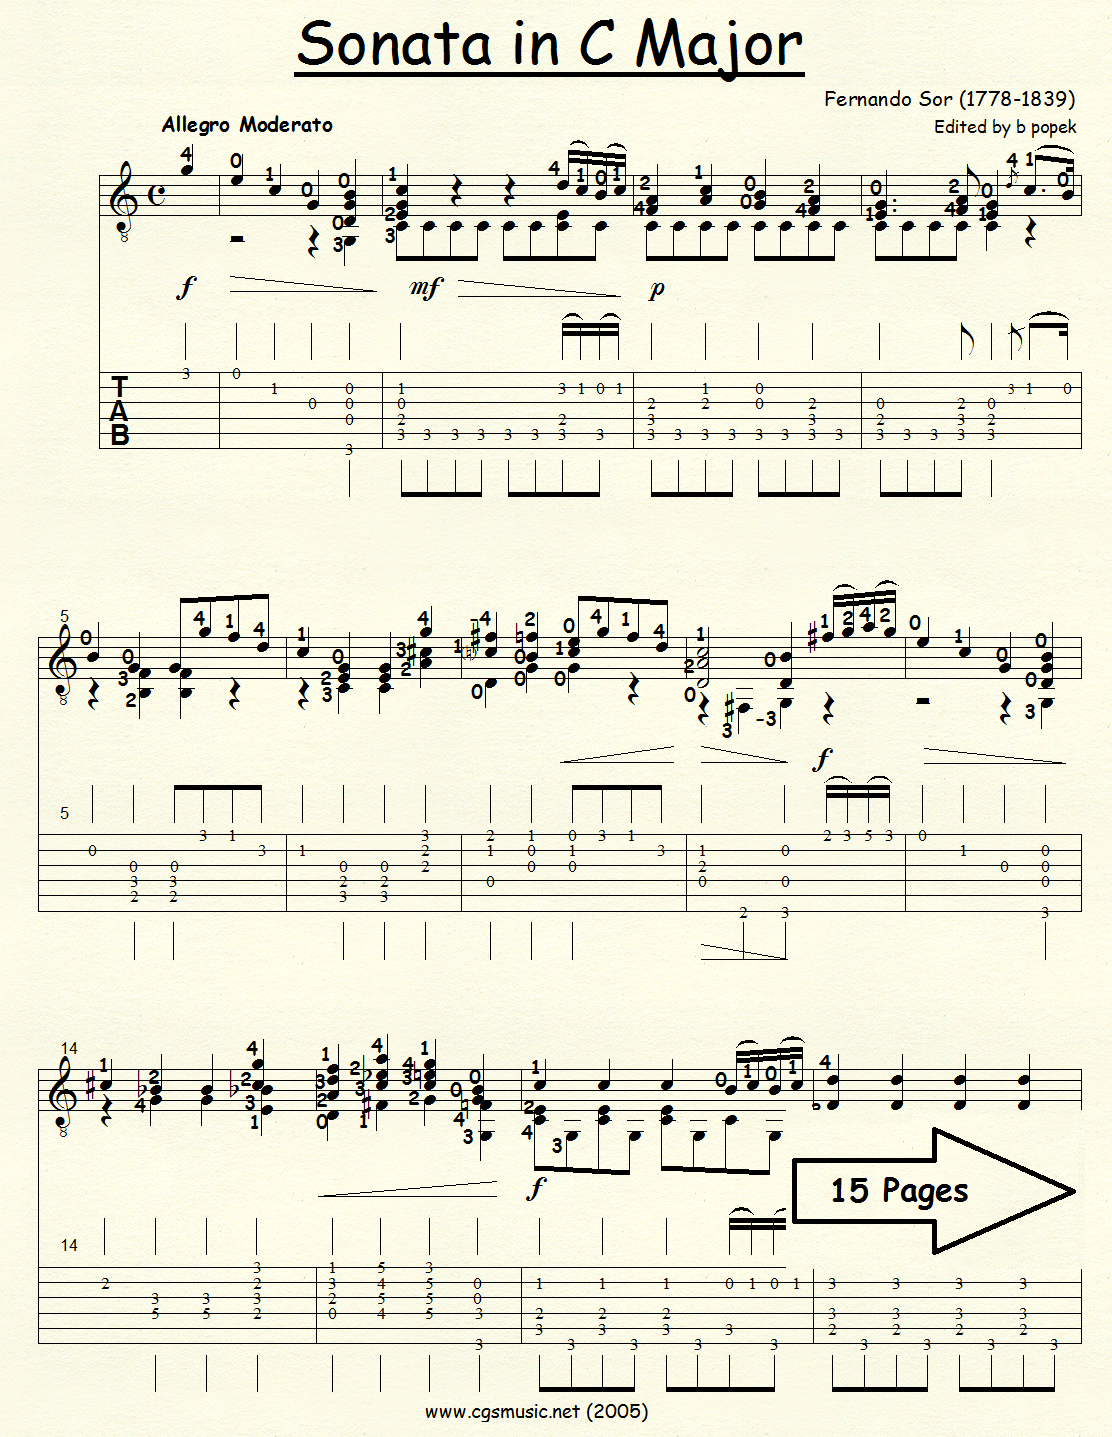 Sonata in C Major (Sor) for Classical Guitar in Tablature